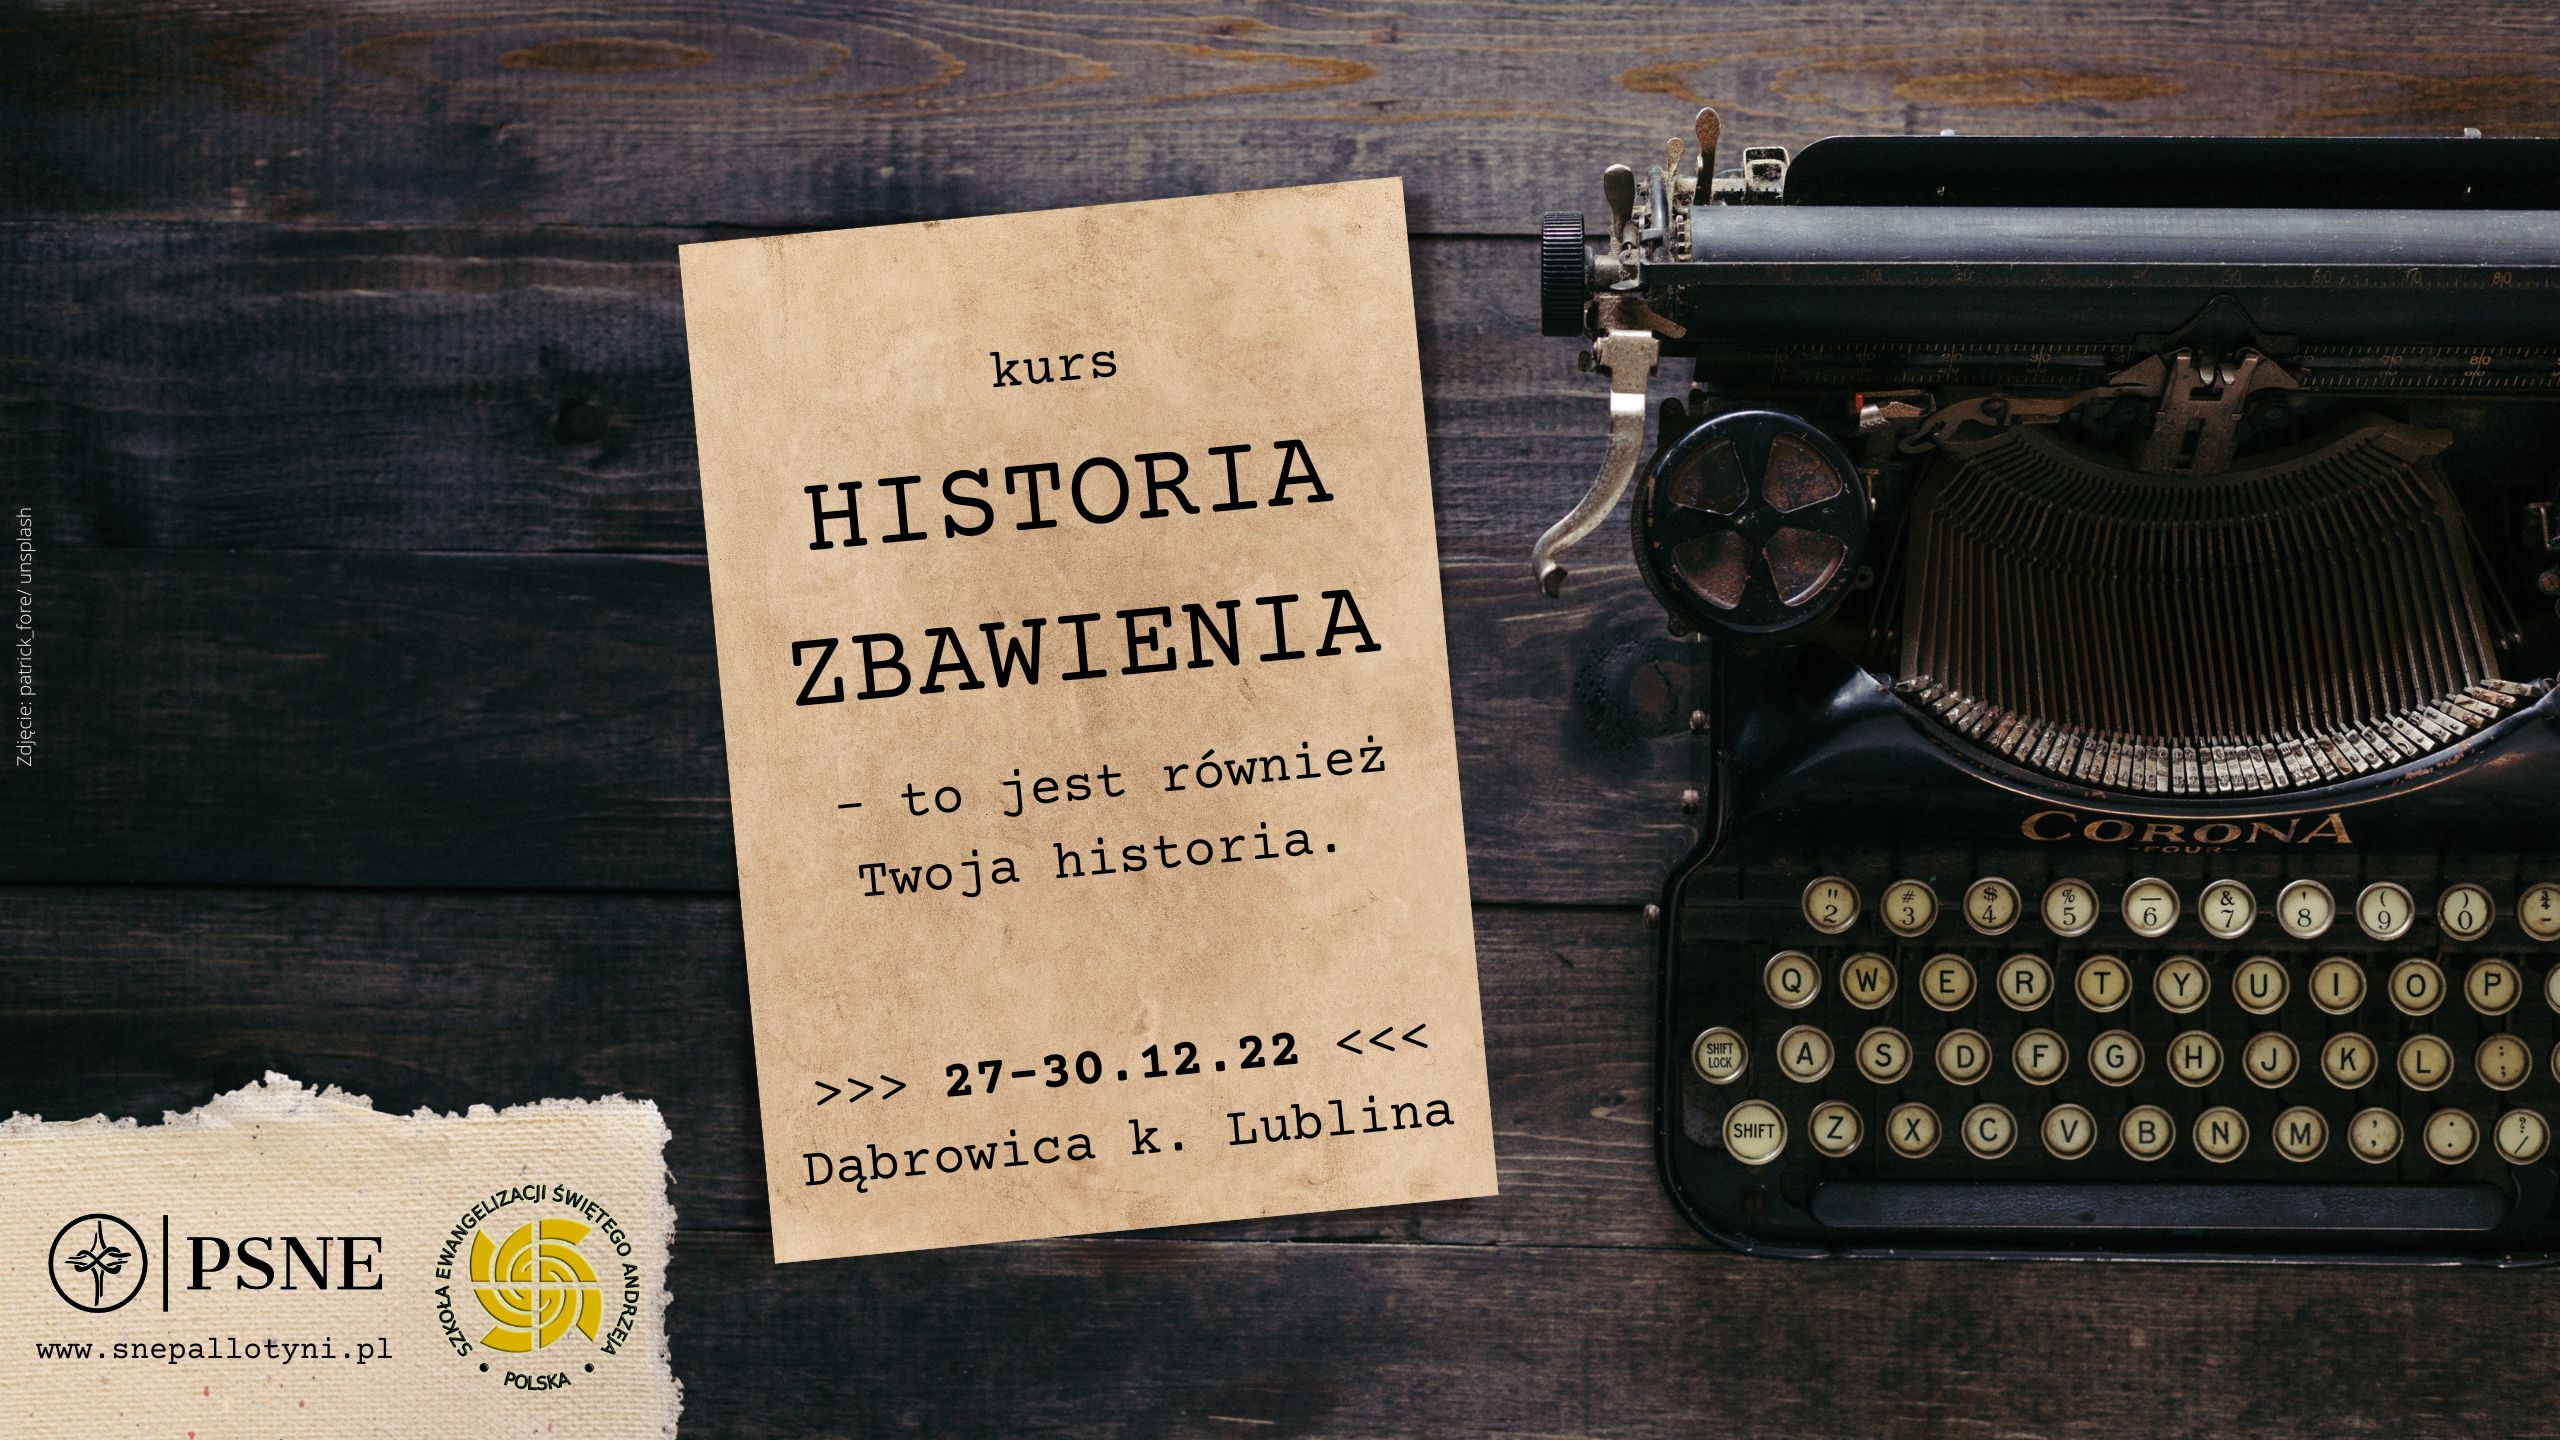 Kurs HISTORIA ZBAWIENIA 27-30.12.22 w Dąbrowicy